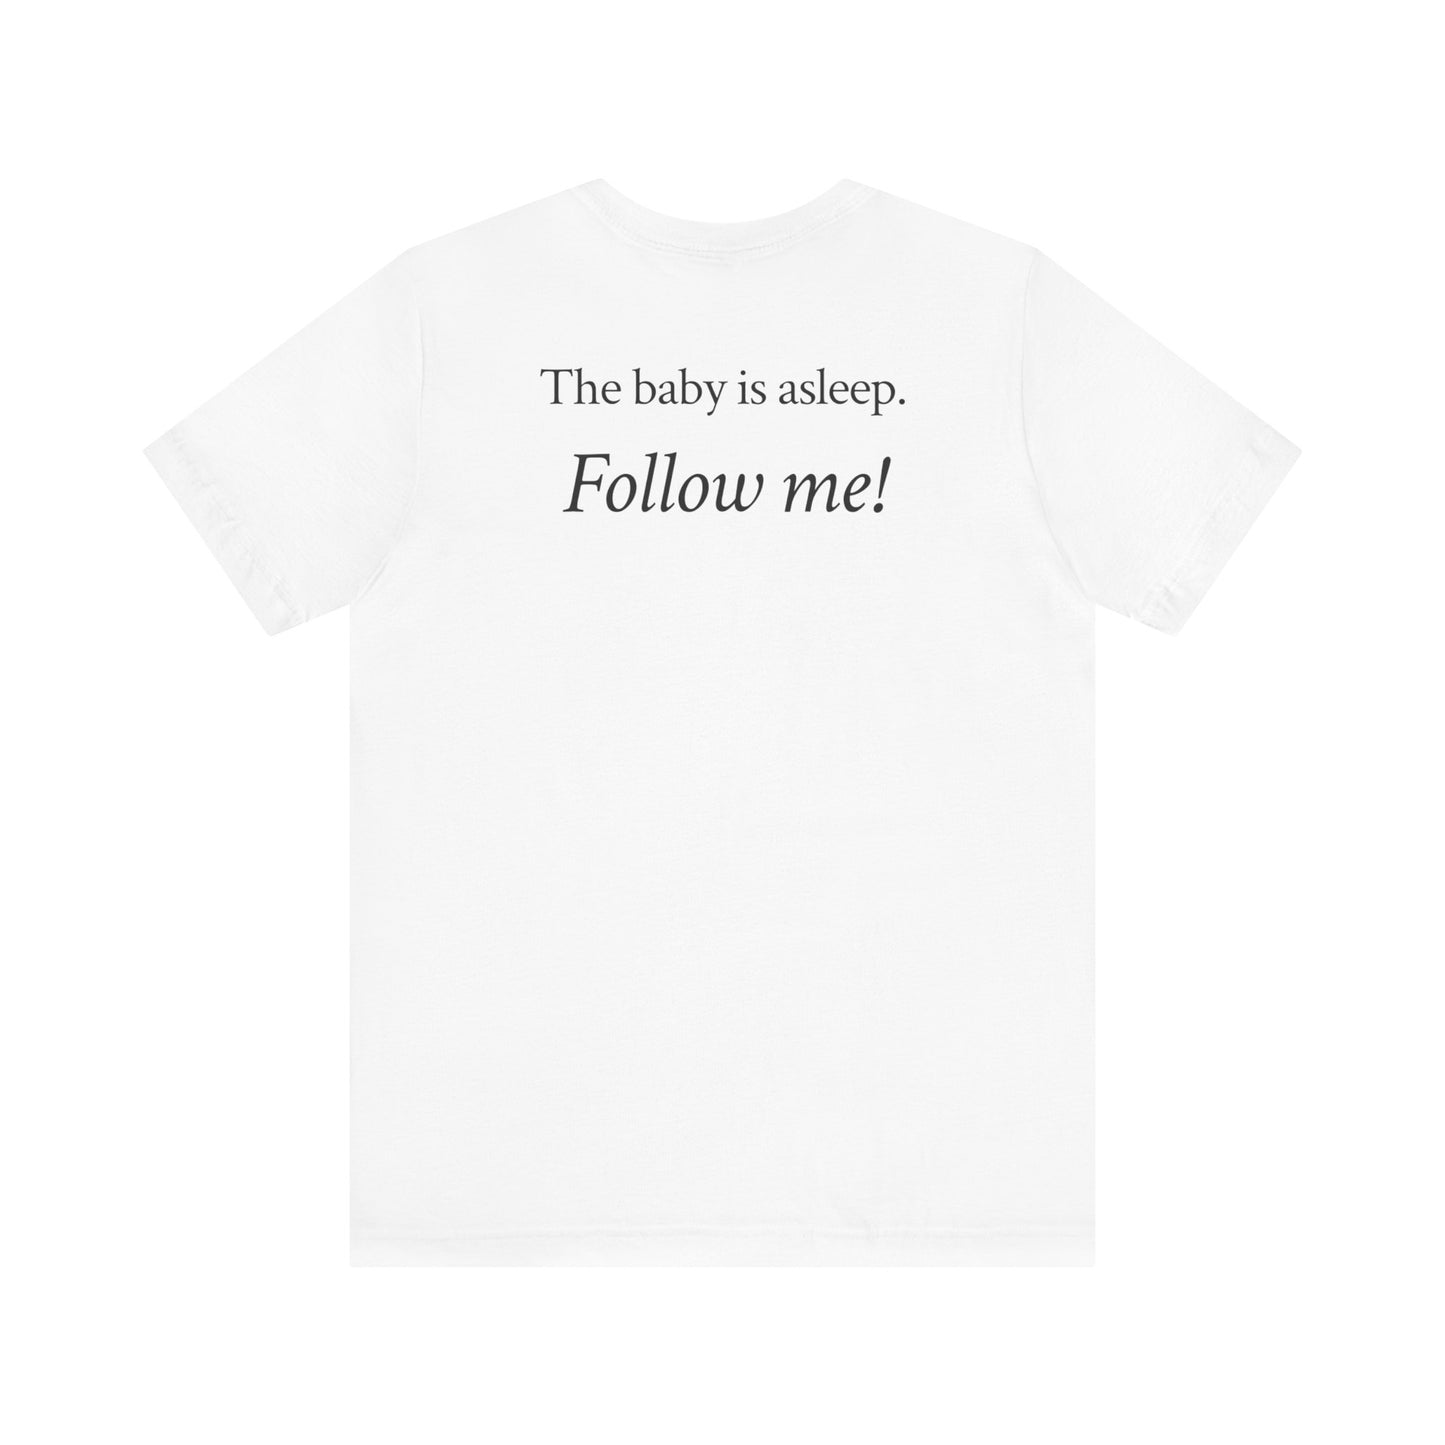 The baby's asleep.  Follow me!